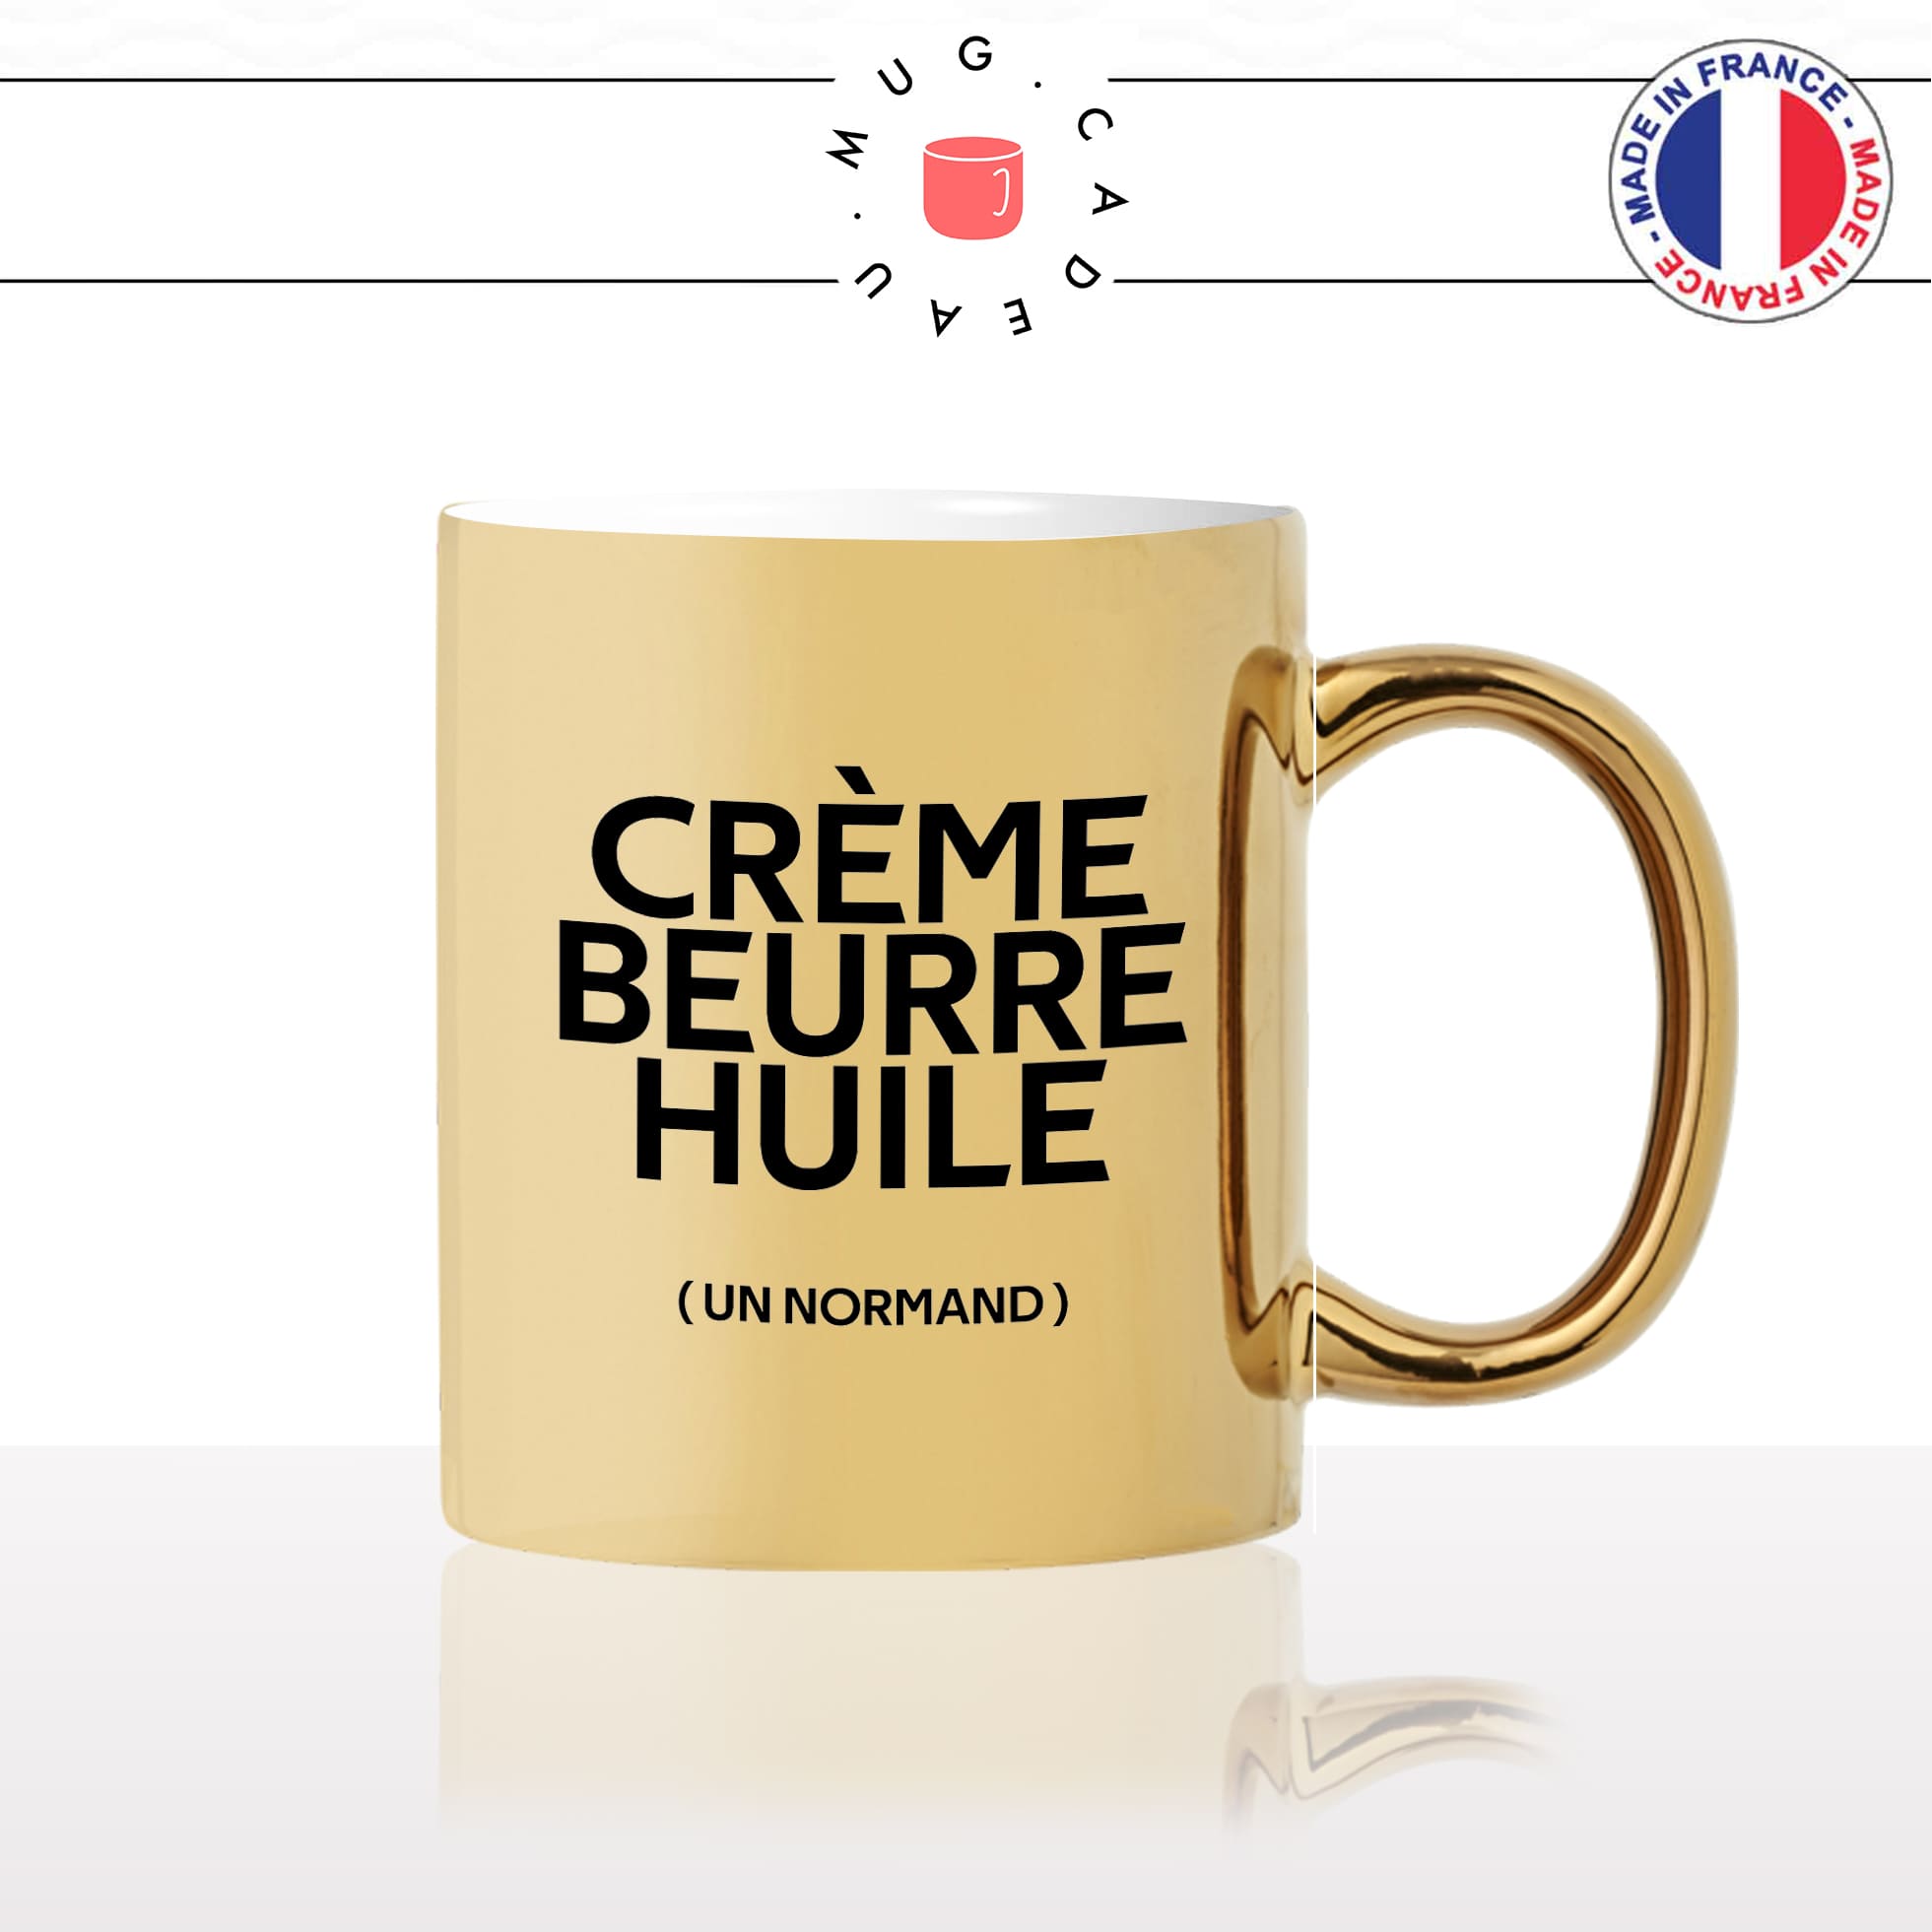 mug-tasse-or-doré-gold-creme-beurre-huile-gras-un-normand-normandie-cuisine-humour-fun-idée-cadeau-originale-cool2